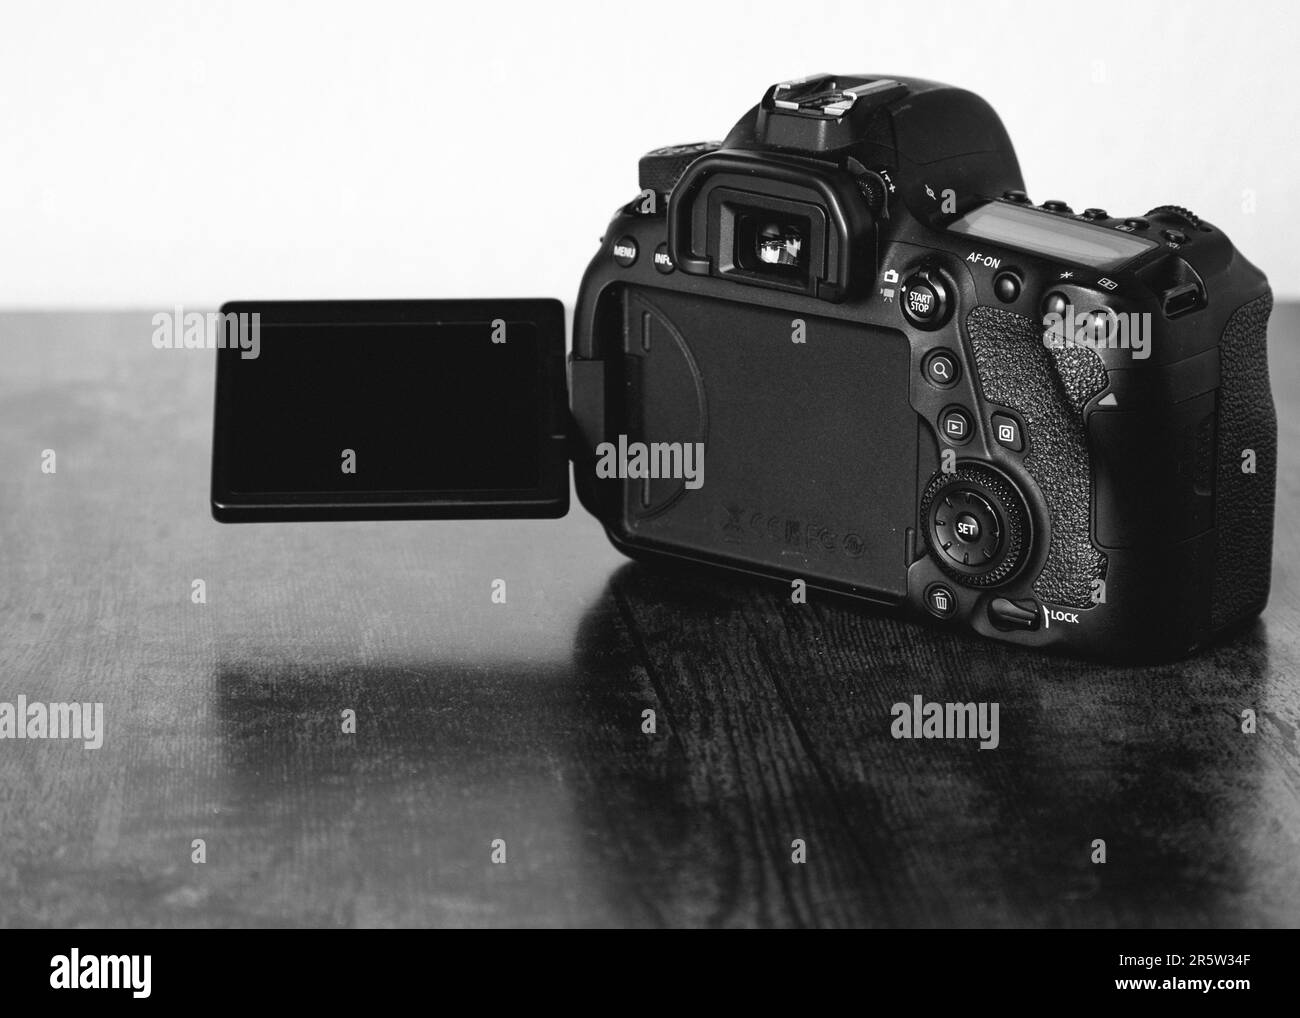 Una toma en escala de grises de una cámara DSLR profesional de Canon sobre la mesa Foto de stock